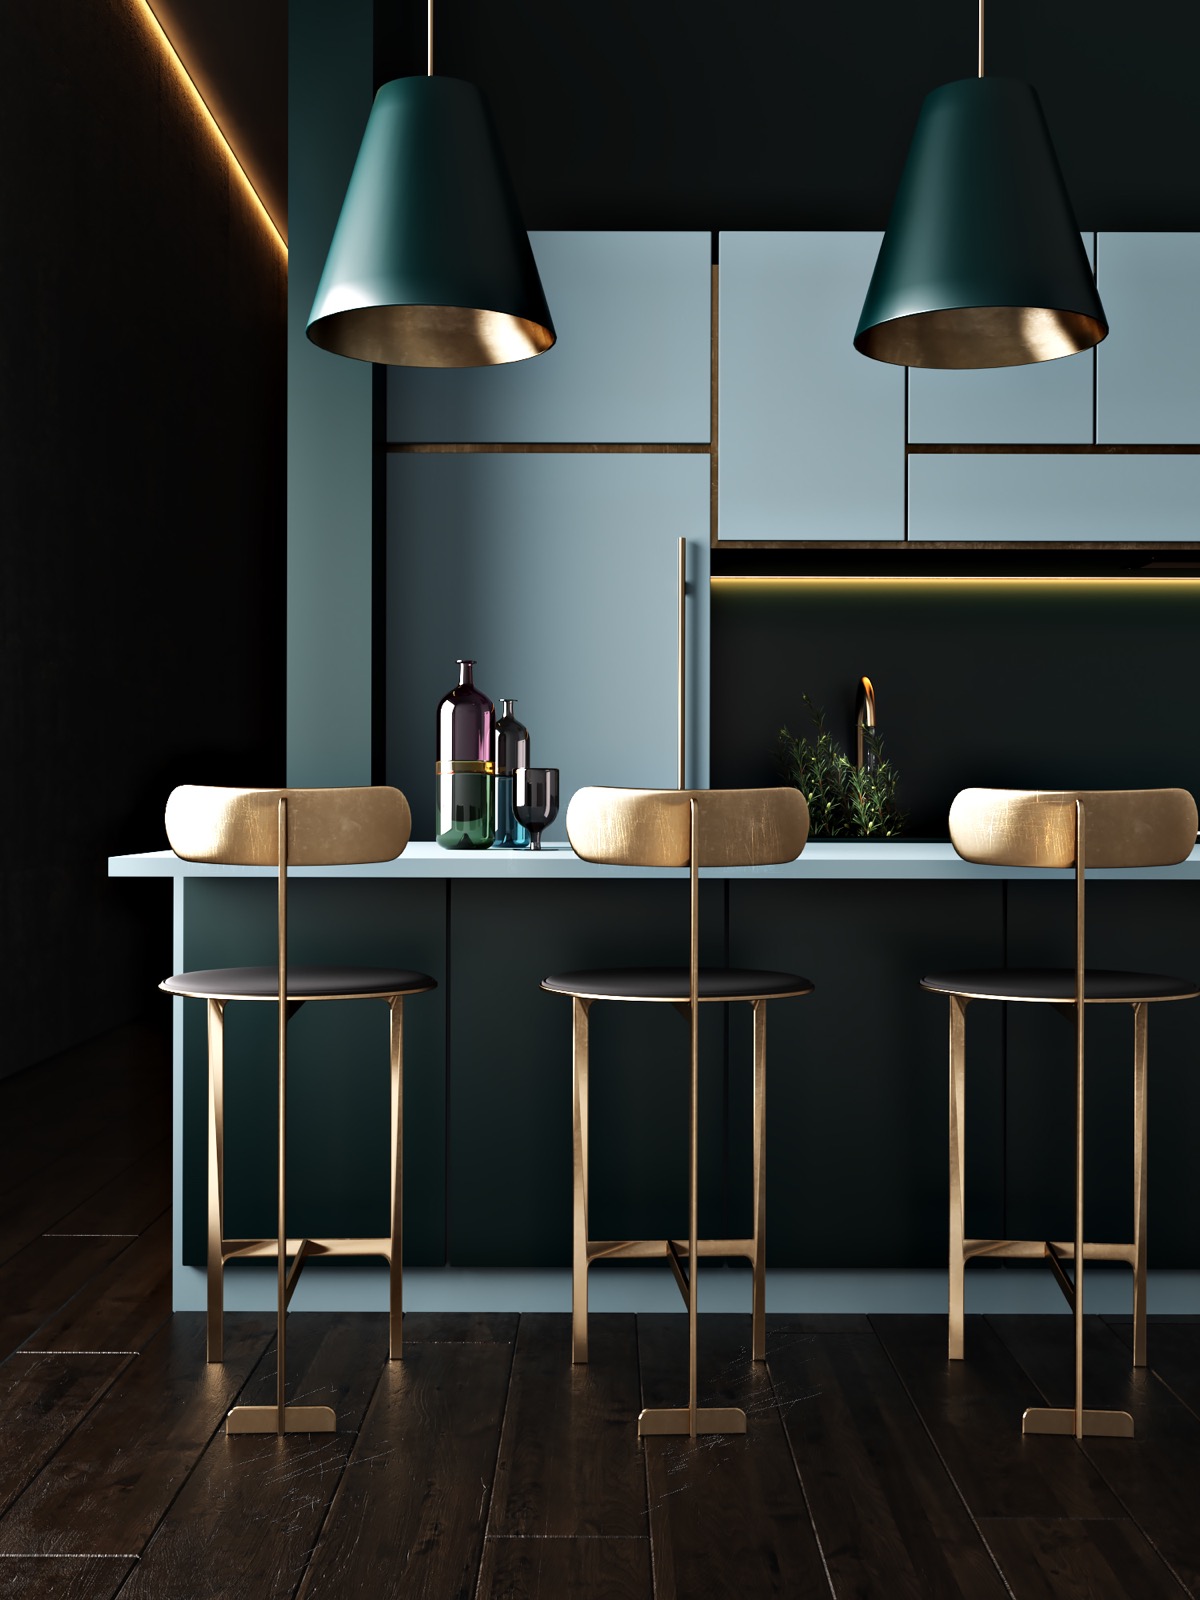  Với thiết kế đón sáng và phản chiếu bởi những bề mặt kim loại, không gian của căn bếp càng trở nên ấn tượng hơn khi sở hữu màu xanh đậm cùng sắc màu phản xạ.